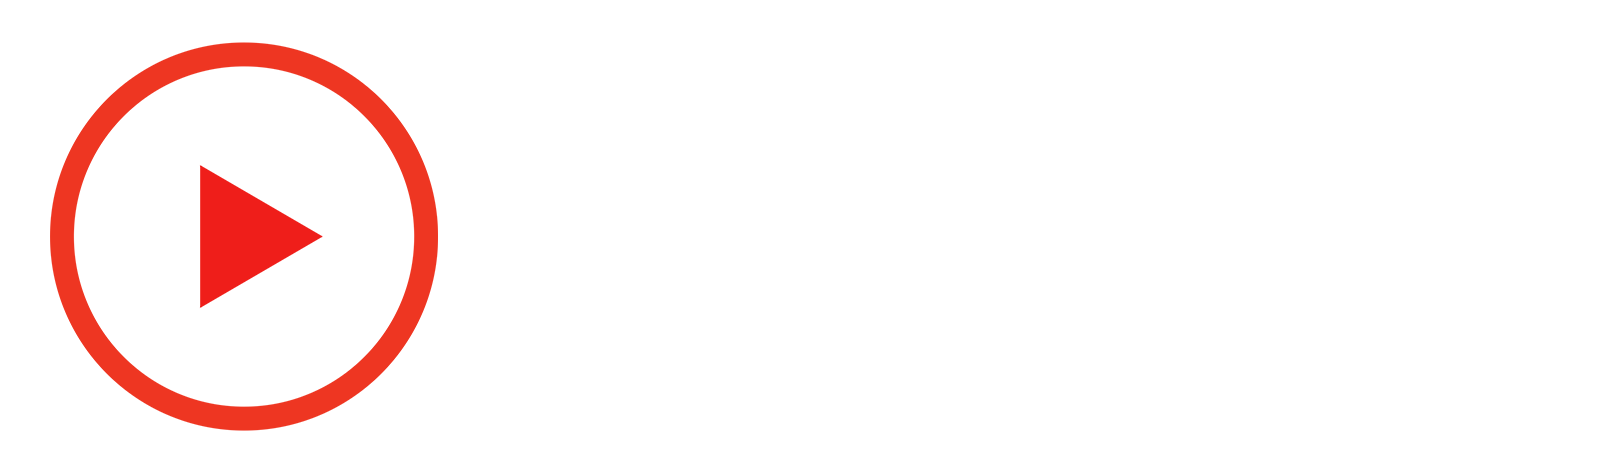 Drama Sea - Dramasea